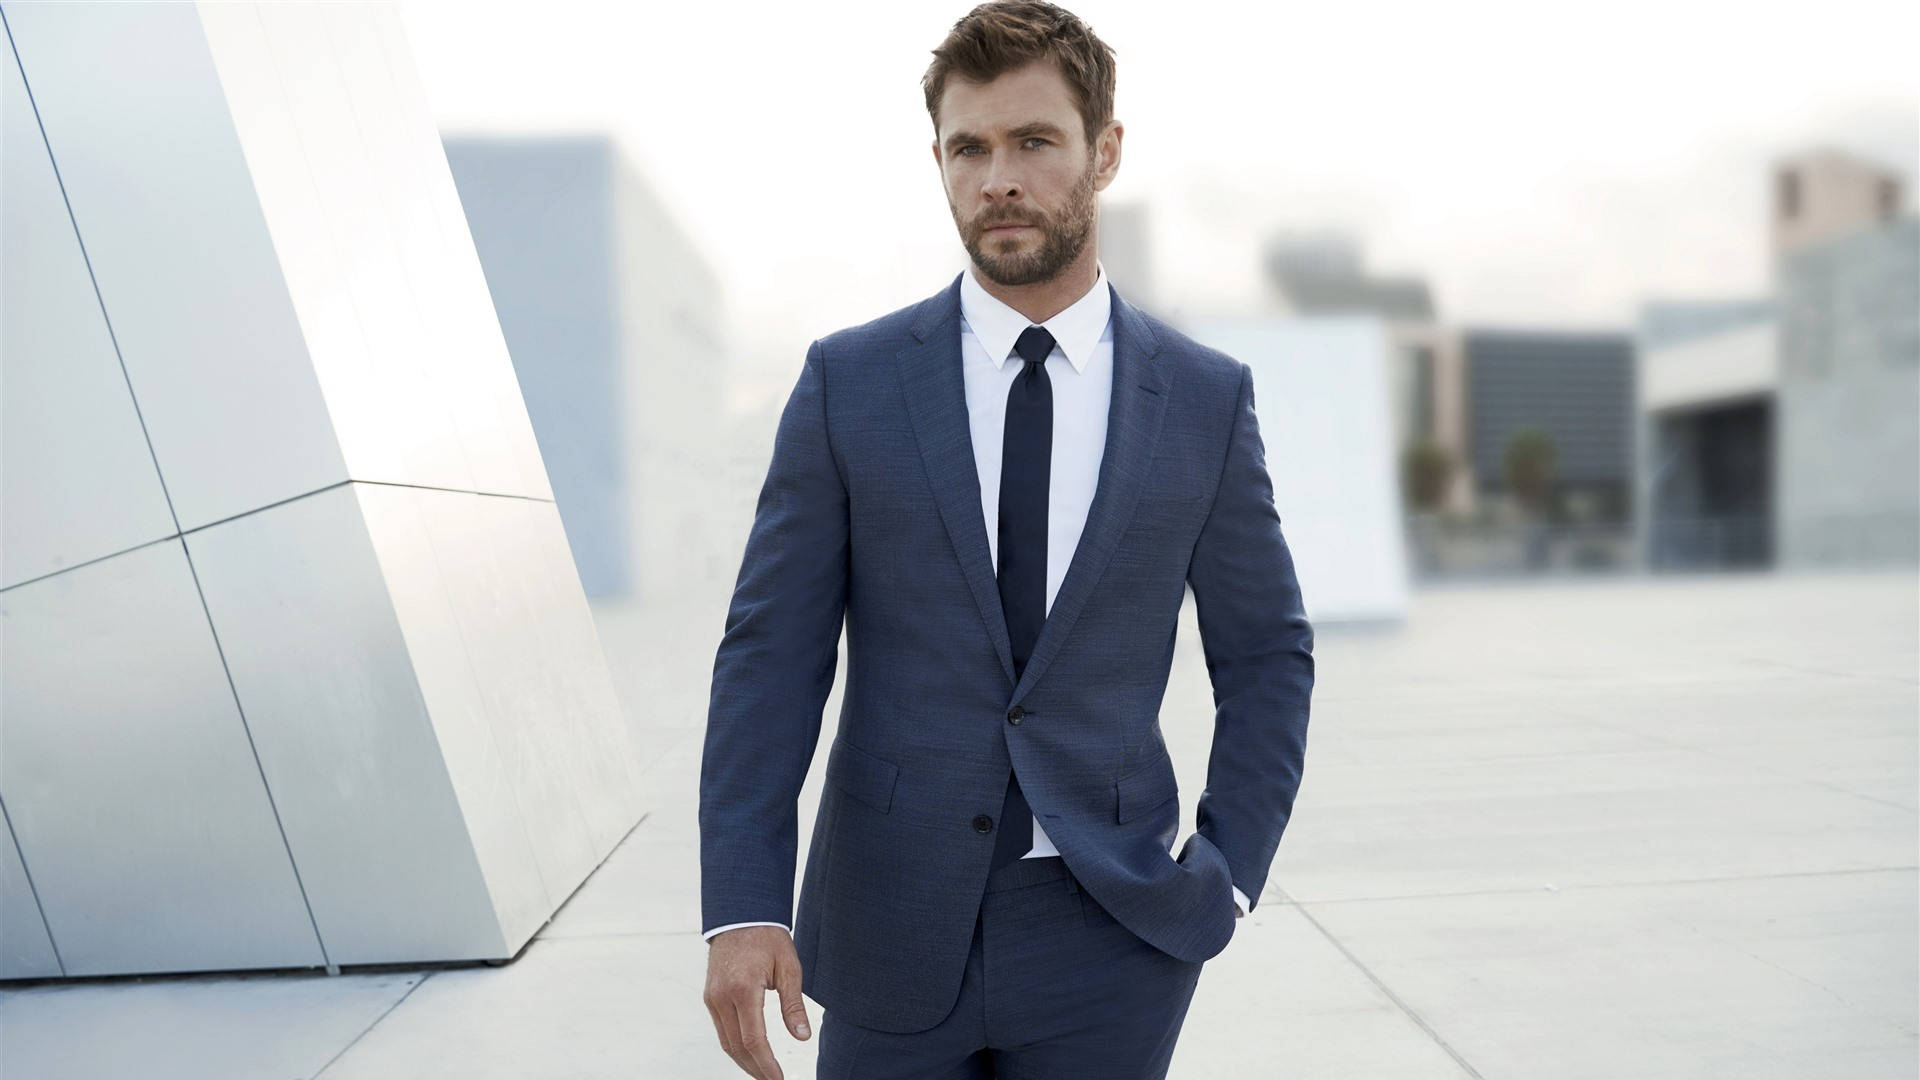 Chris Hemsworth In Suit Wallpaper